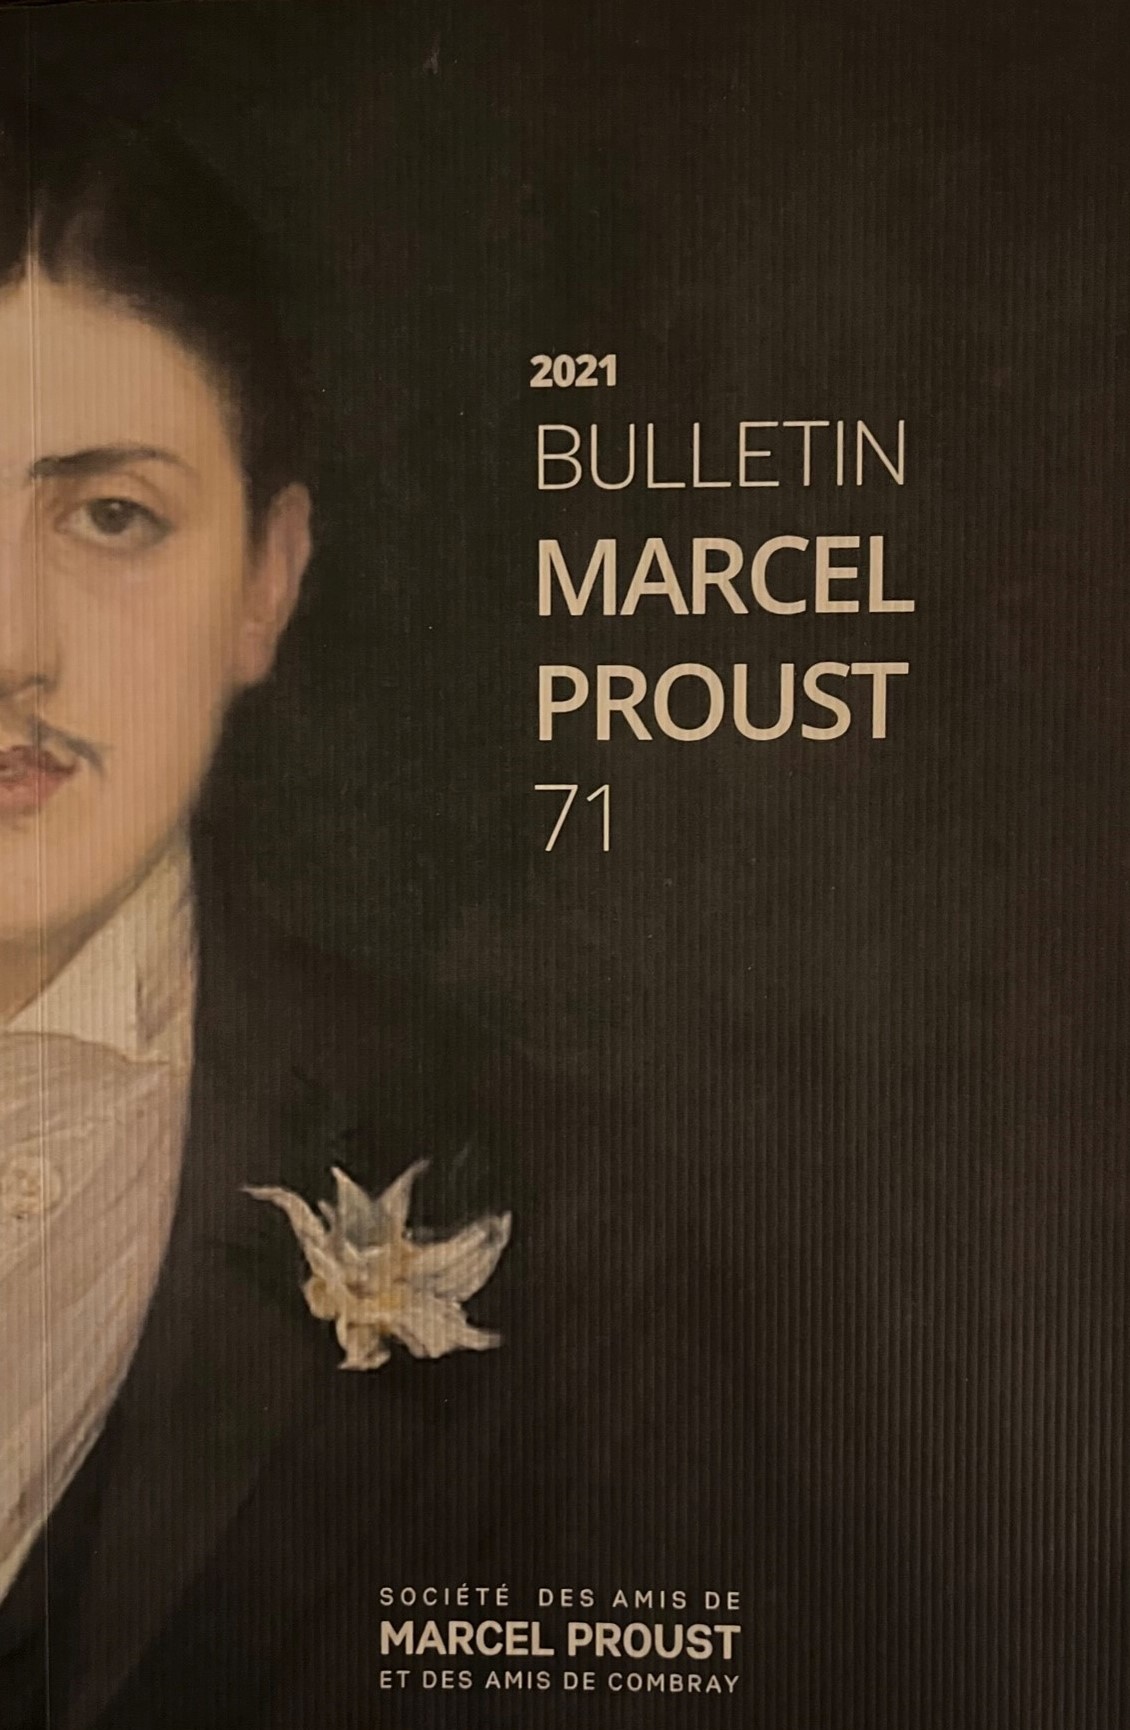 BULLETIN MARCEL PROUST (France)